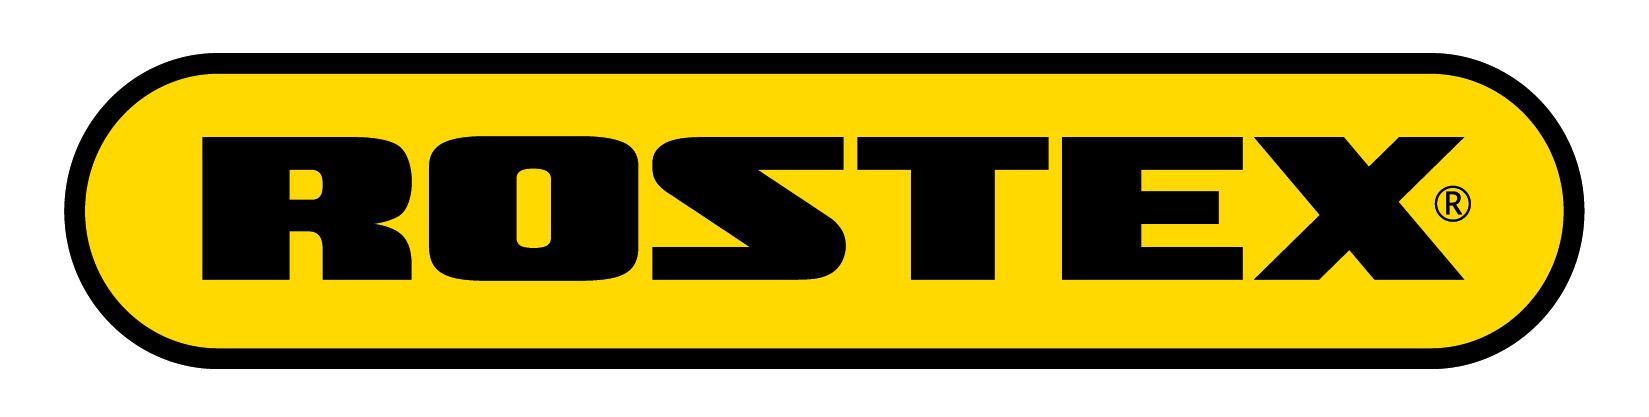 rostex logo_1